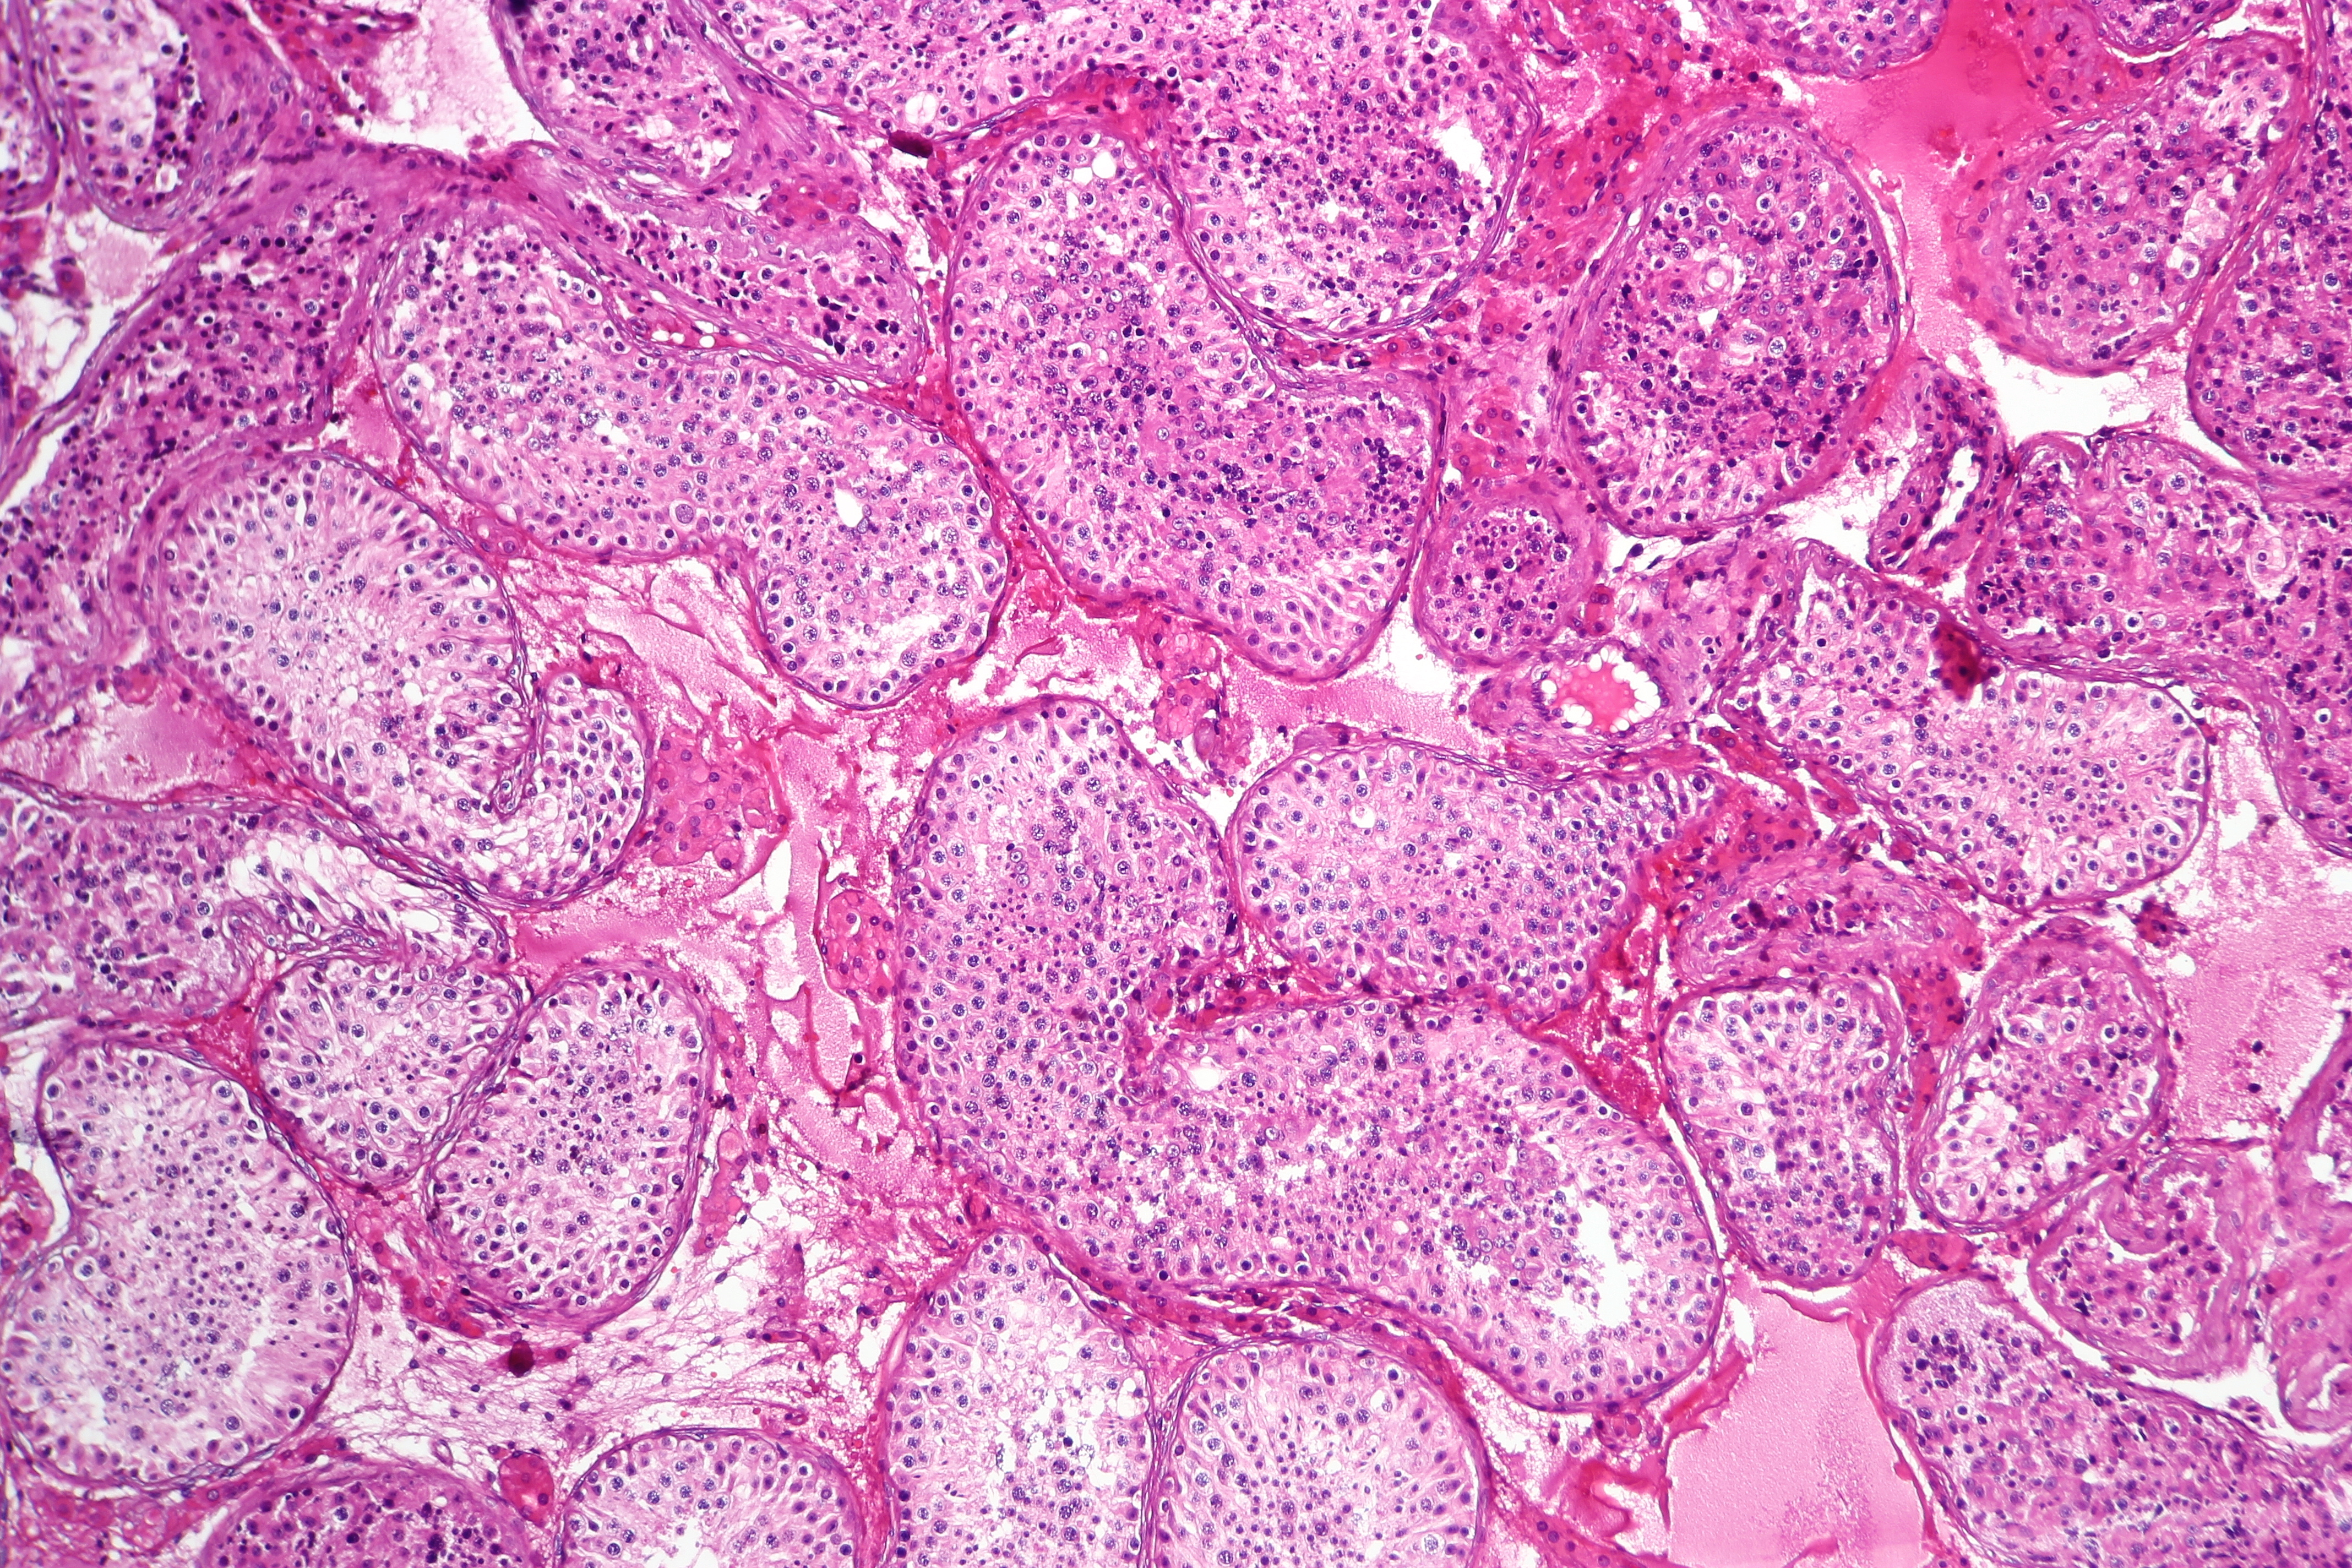 Normal spermatogenesis, testis biopsy.